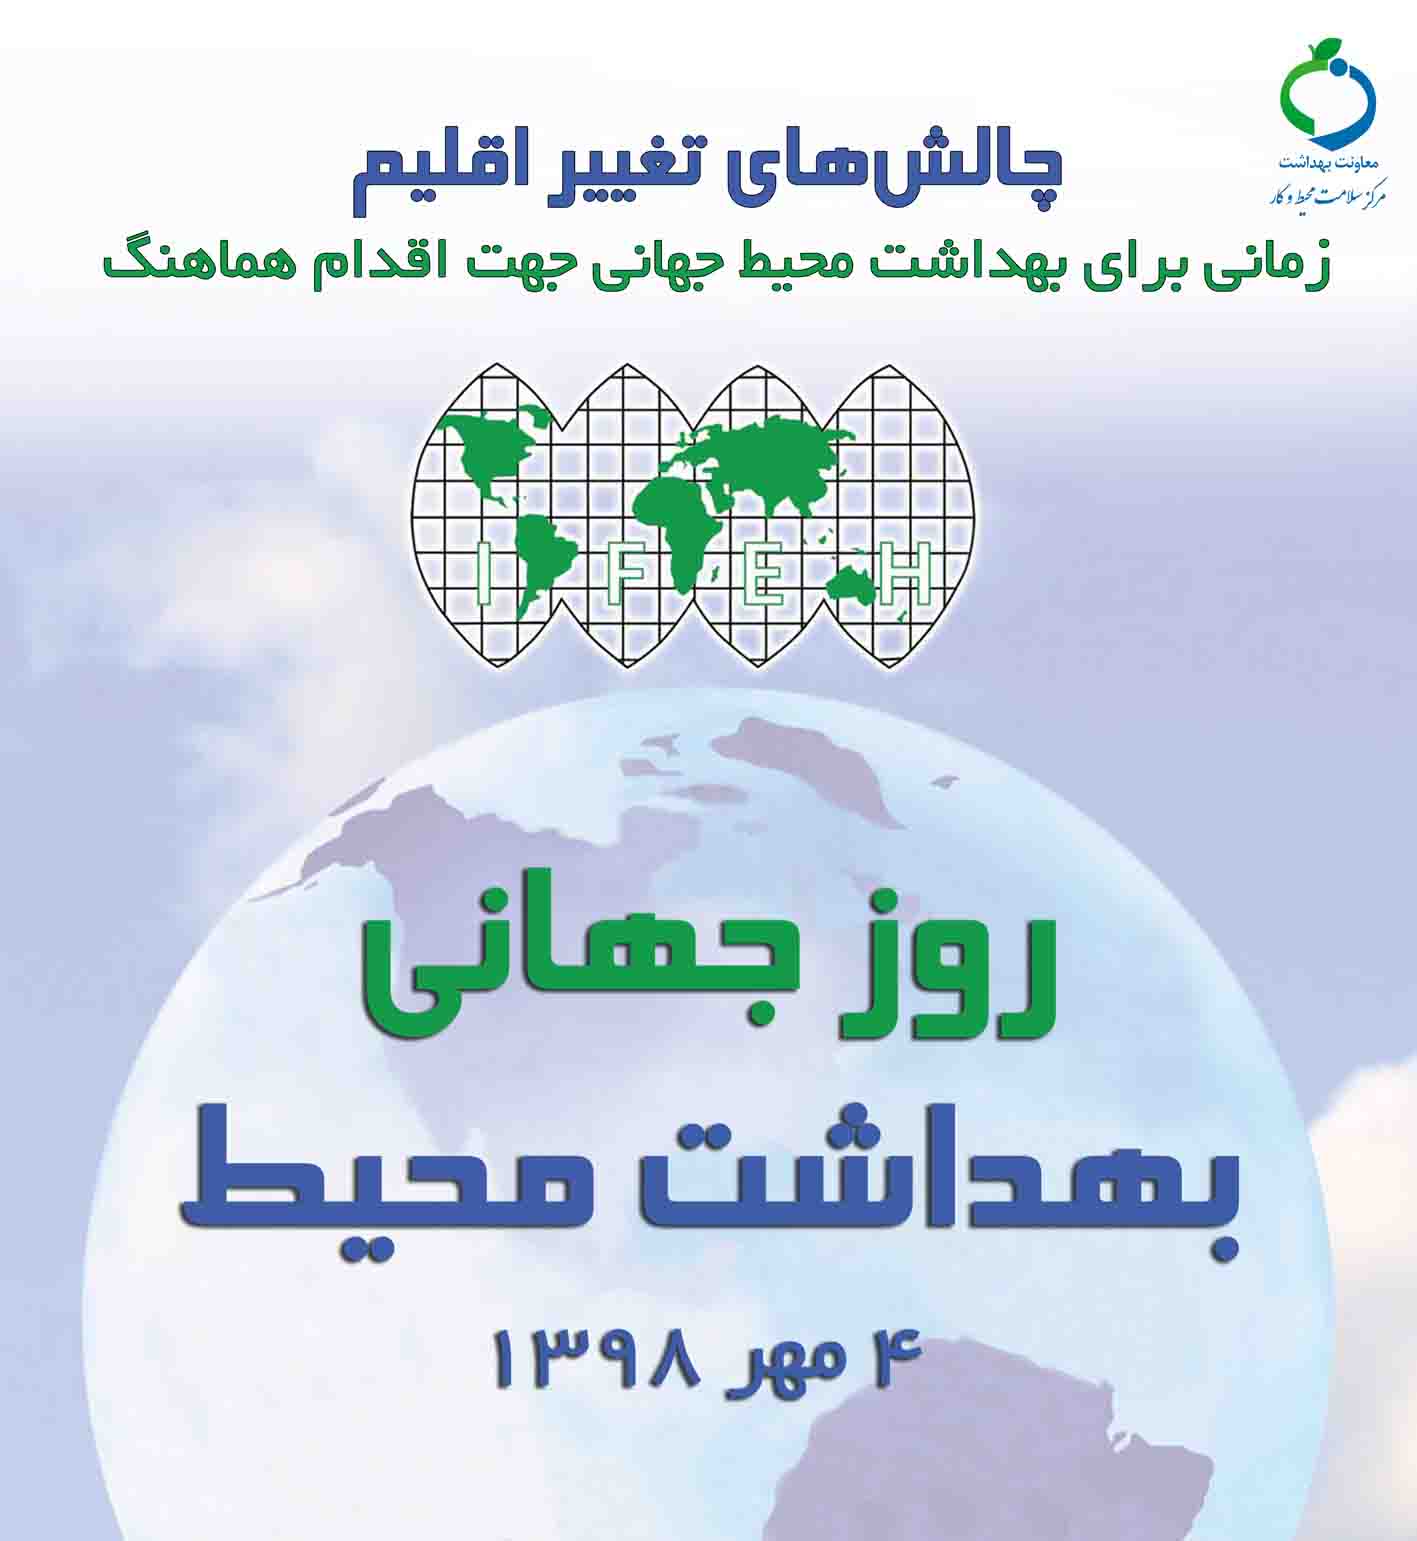 پوستر روز جهانی بهداشت محیط 98